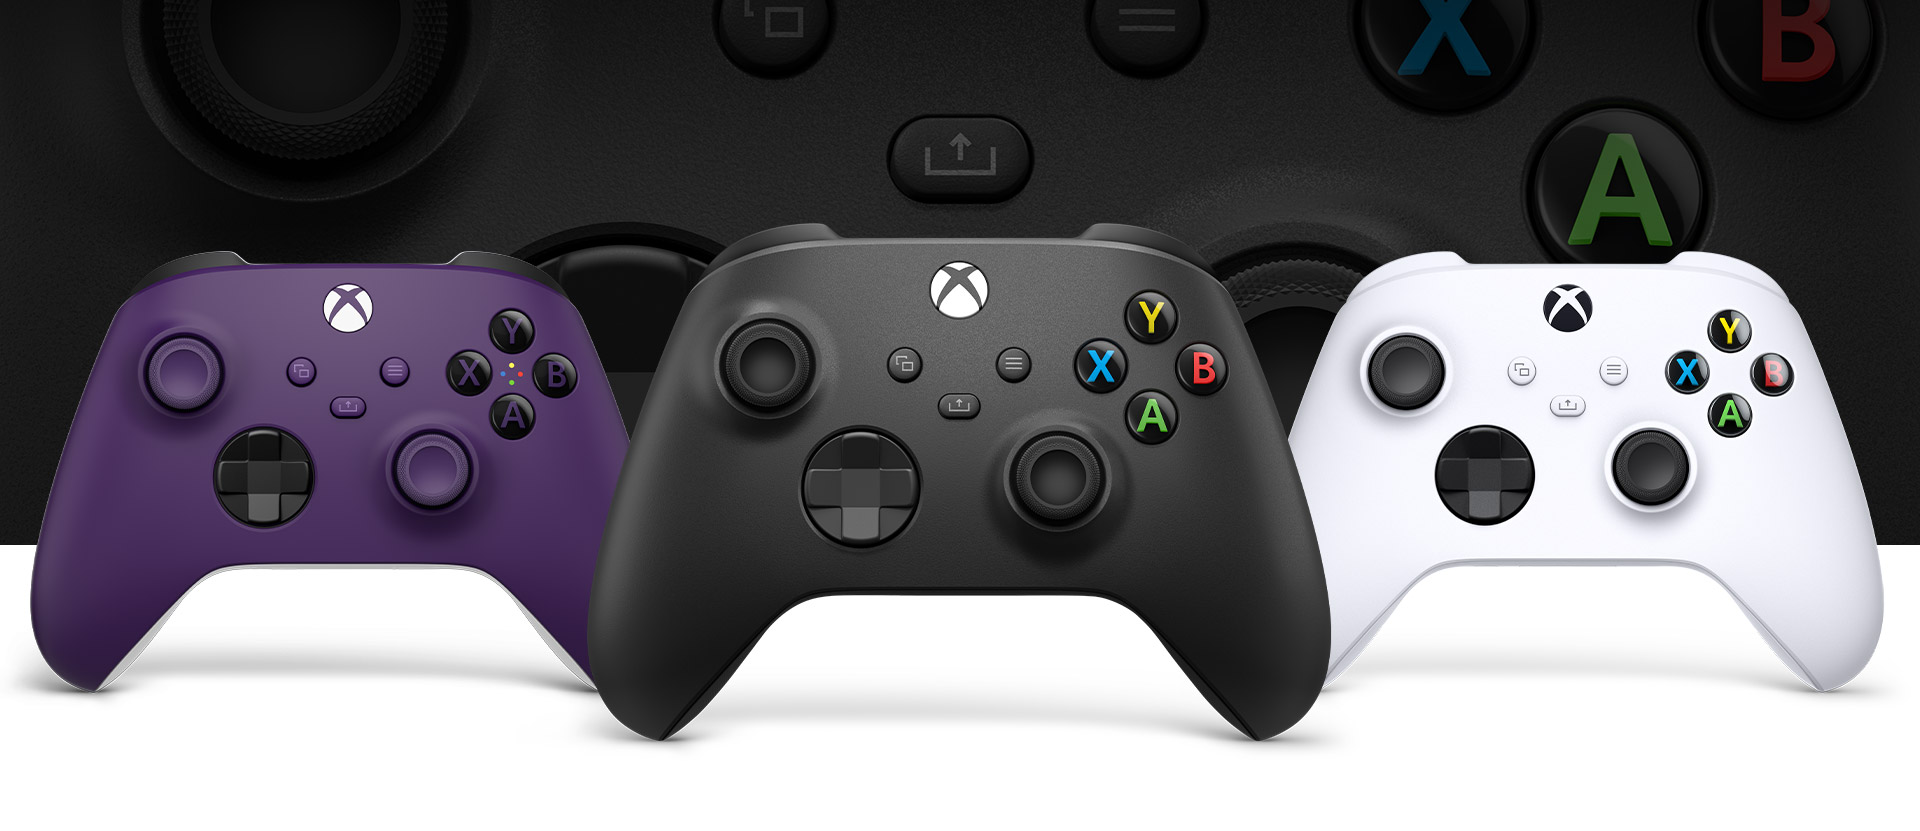 Kontroler Xbox w kolorze węglowej czerni, a za nim: kontroler w kolorze fioletowym po lewej i kontroler w kolorze robotycznej bieli po prawej